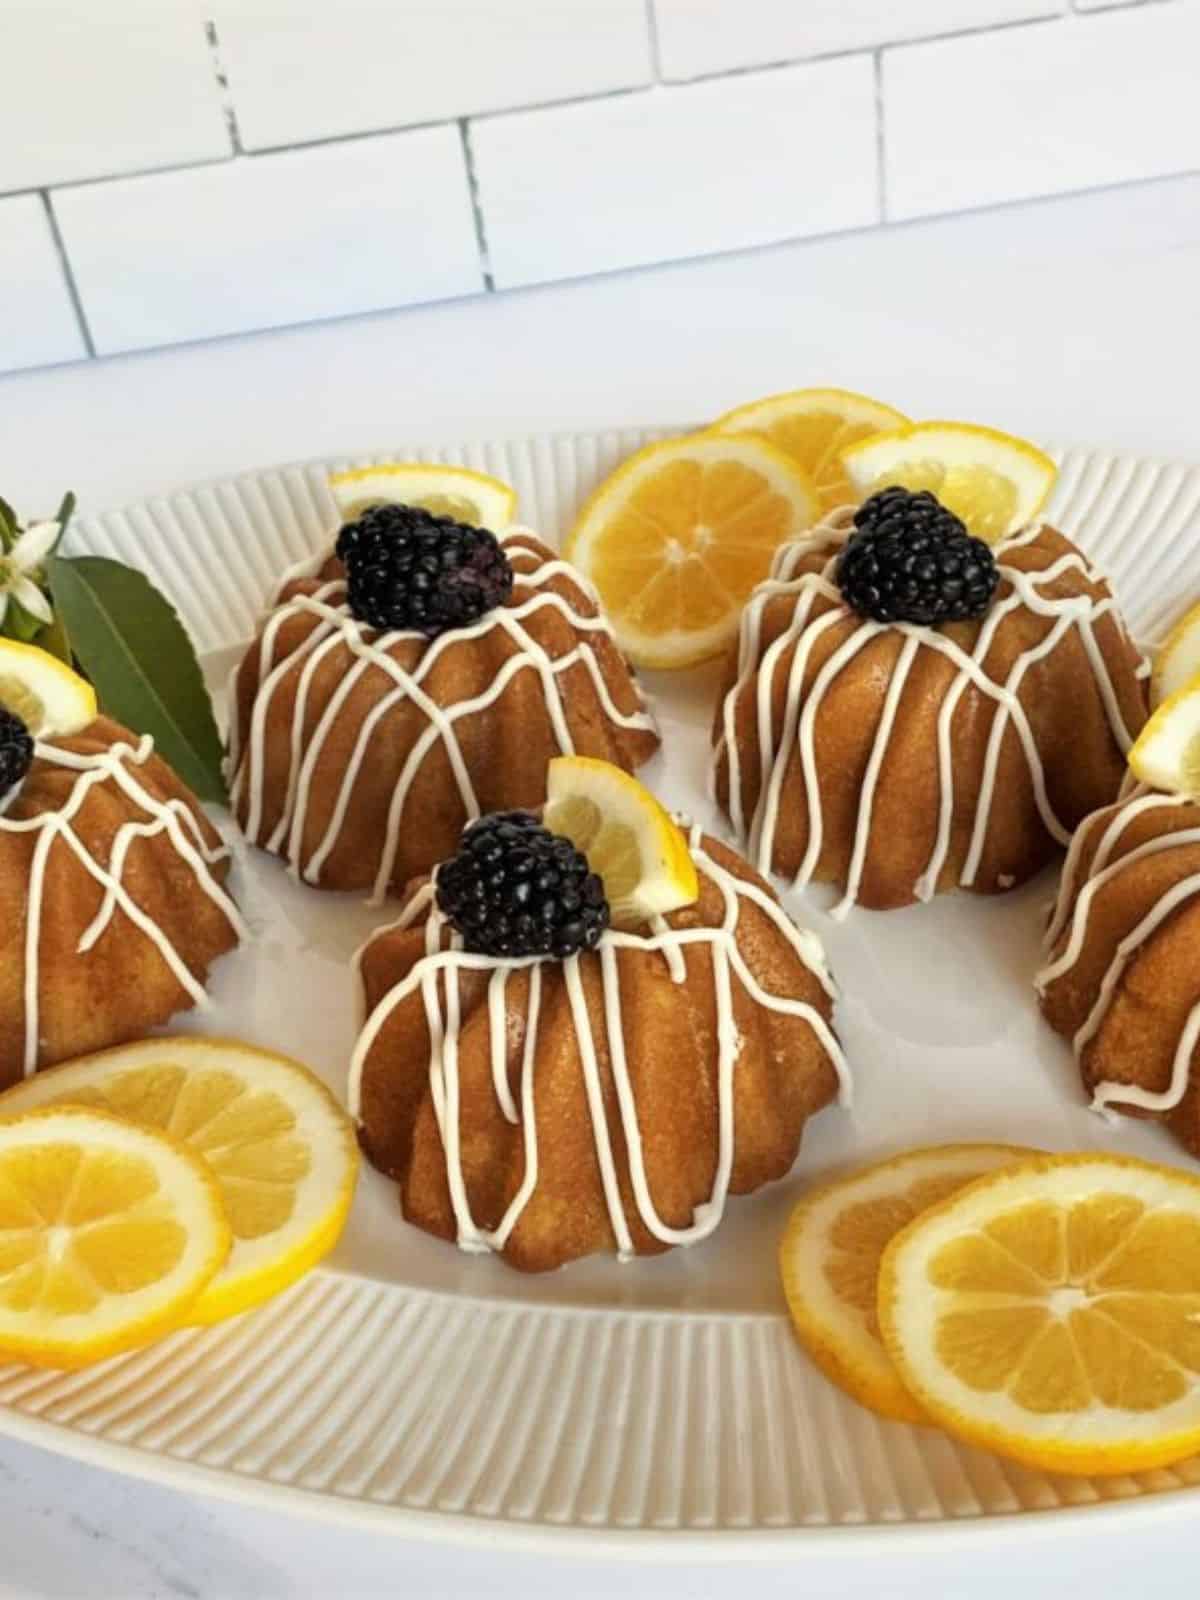 freshly baked lemon olive oil cakes, topped with fresh blackberry and a slice of lemon.